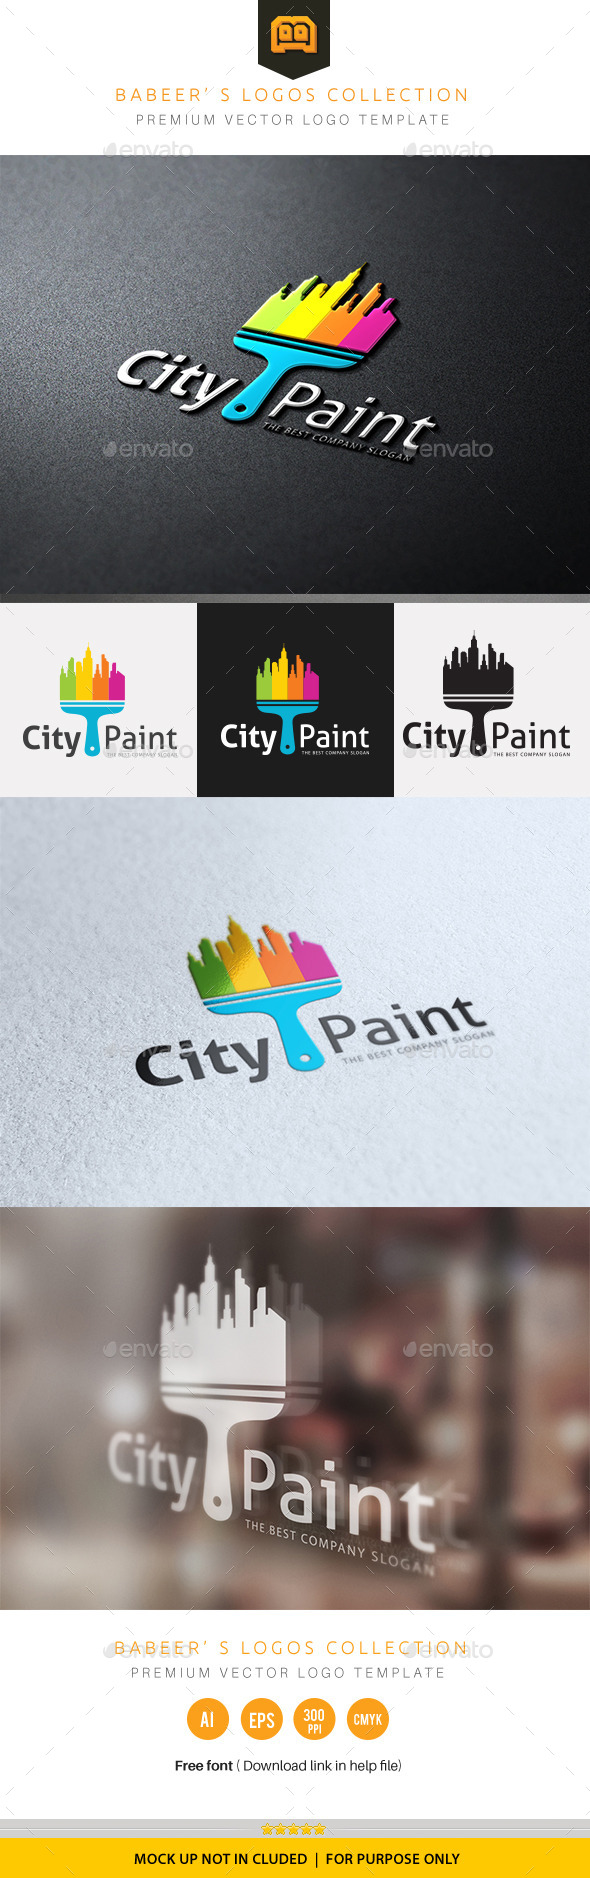 City Paint